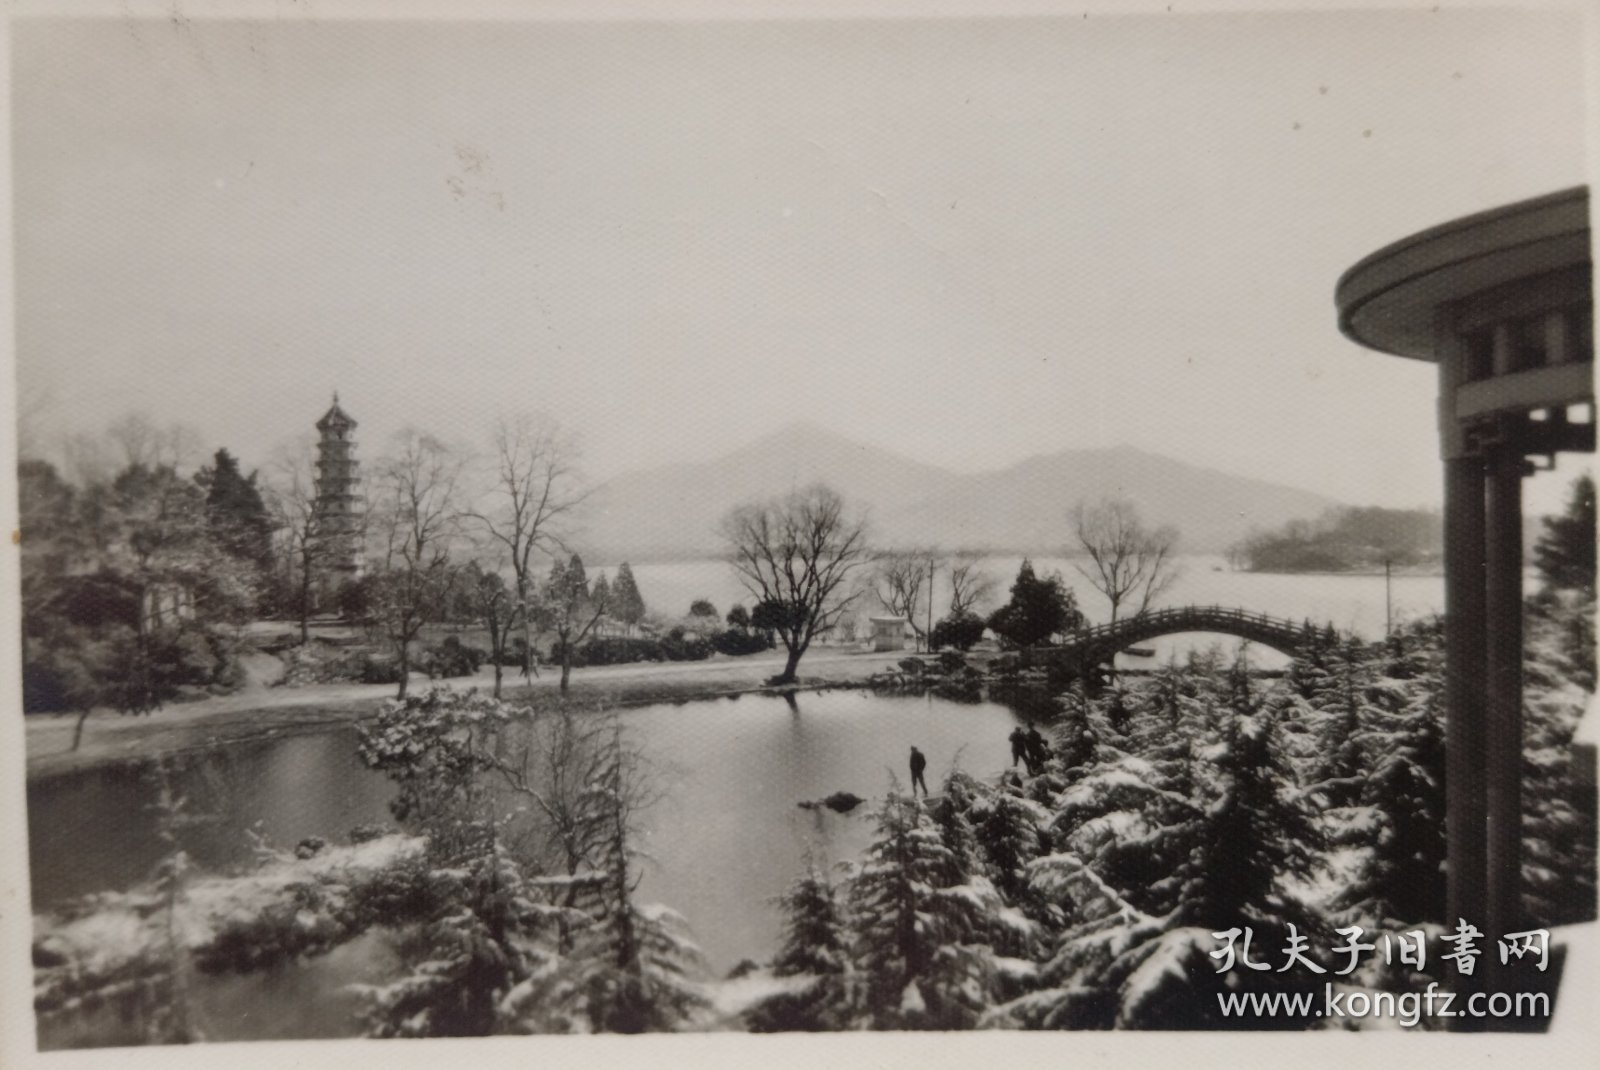 八十年代拍摄《南京玄武湖雪景》原版黑白照片一张